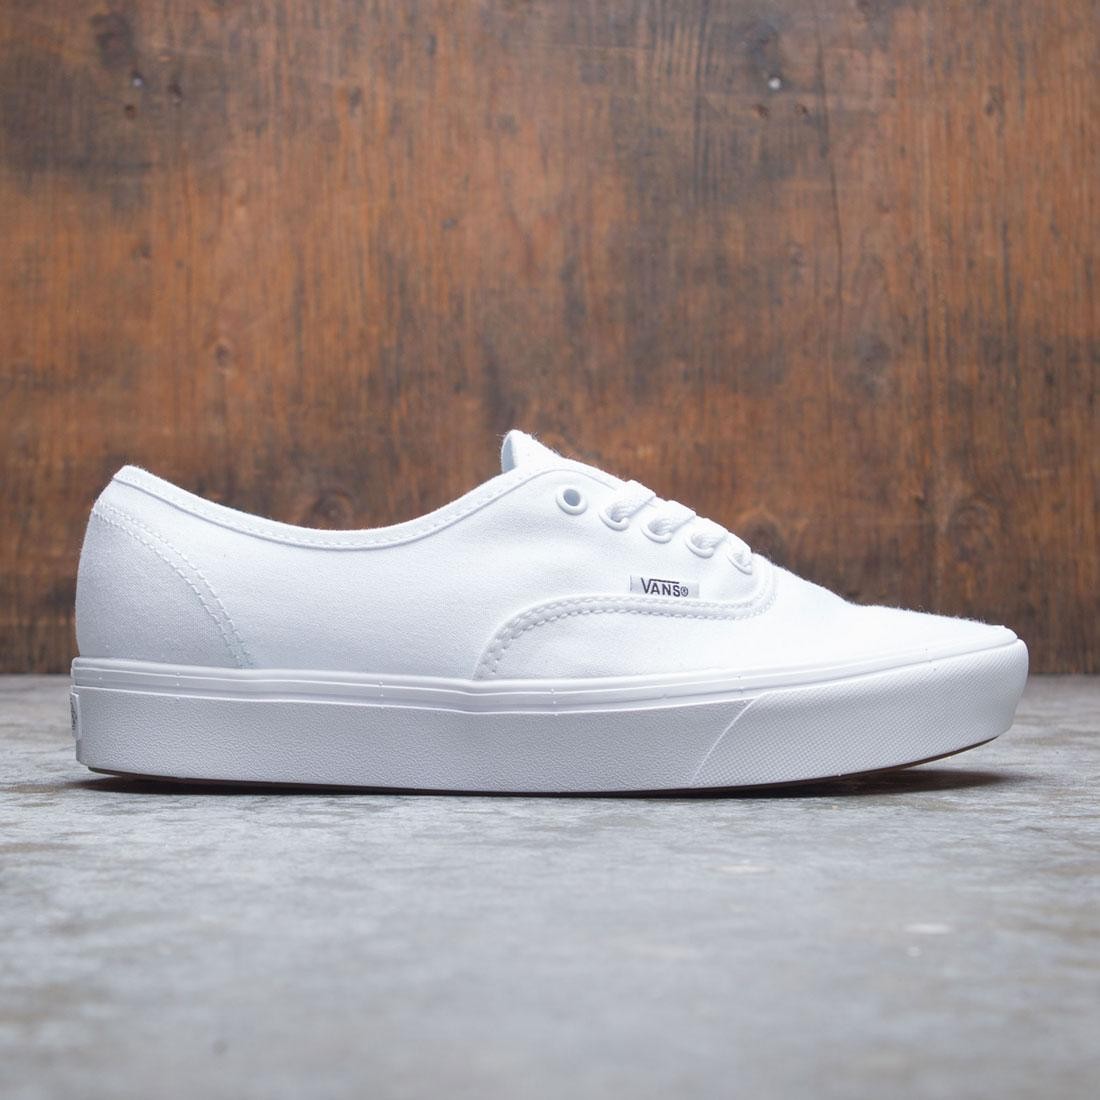 Vans - Comfycush Authentic Classic Black/True White - Shoes